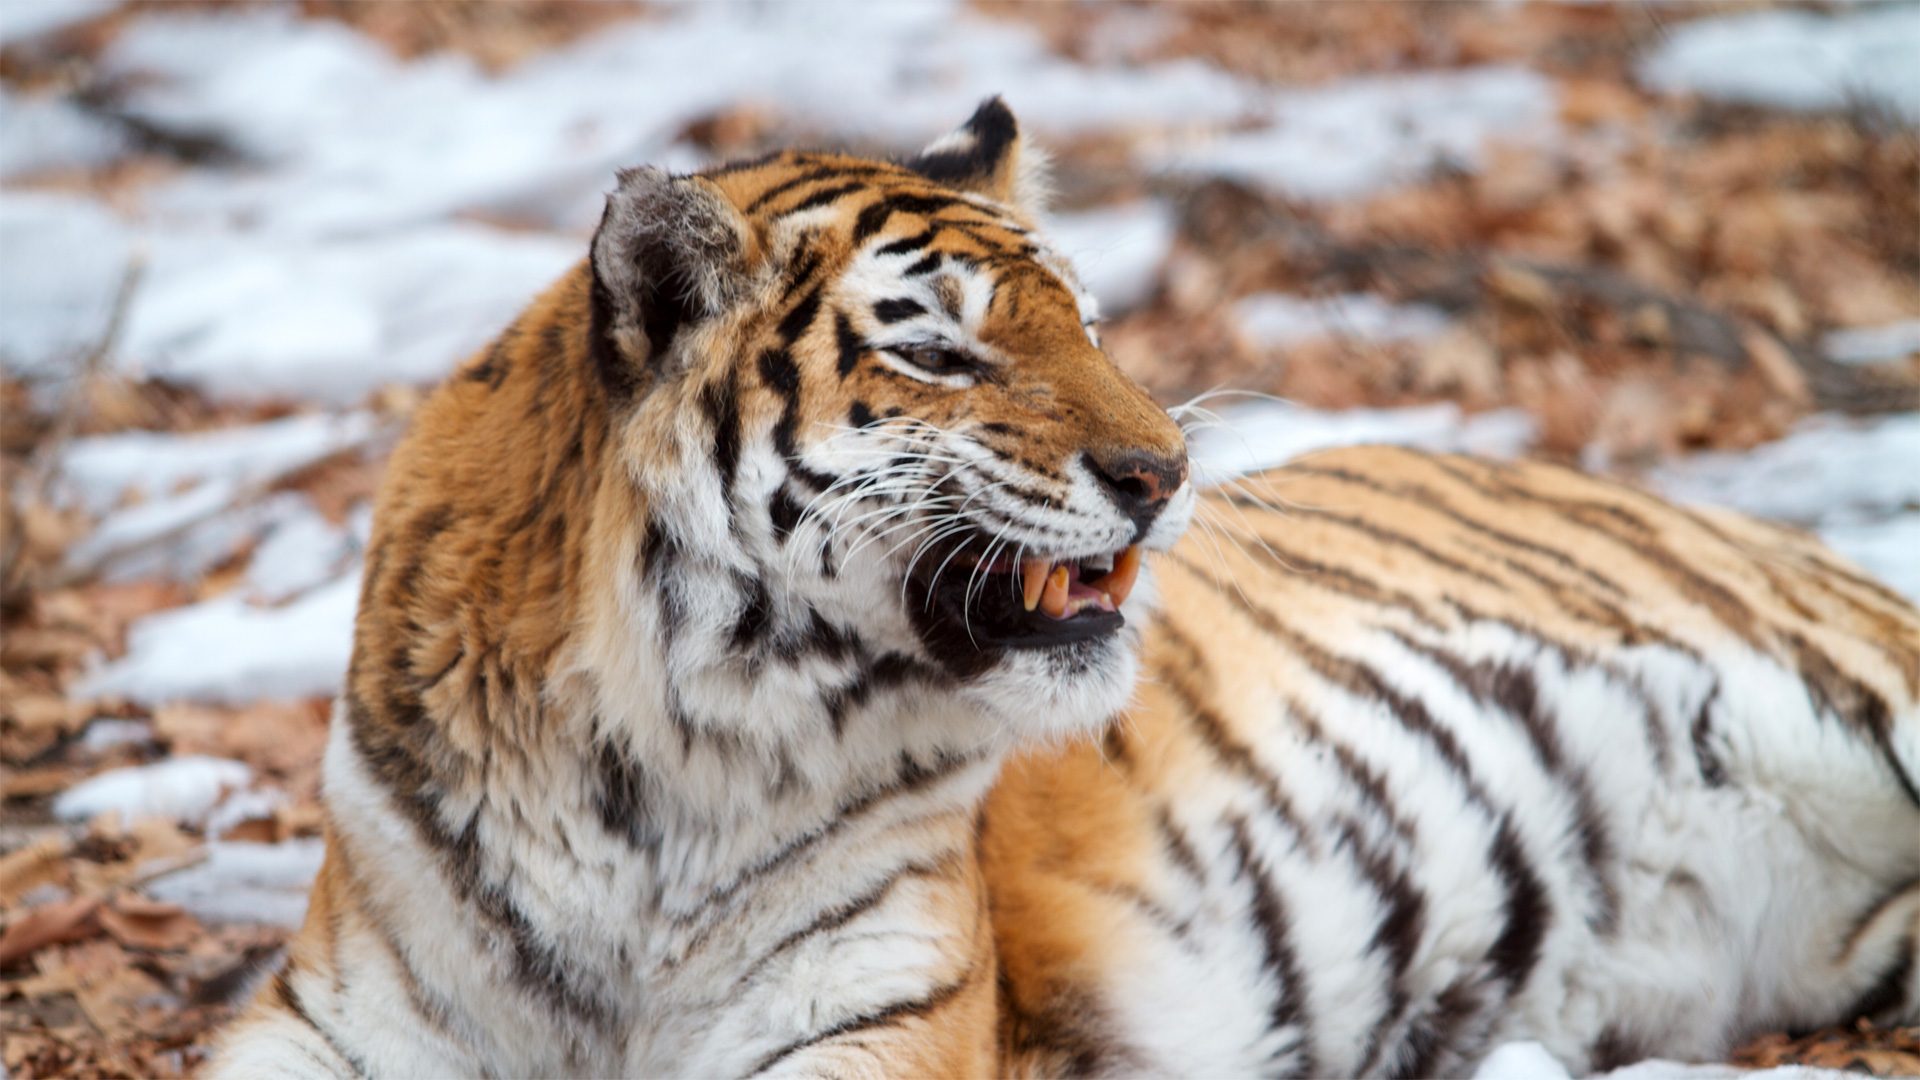 Ρωσία: Ξαφνική επίθεση τίγρης σε υπάλληλο ζωολογικού κήπου – Παρολίγον τραγωδία (φωτό)